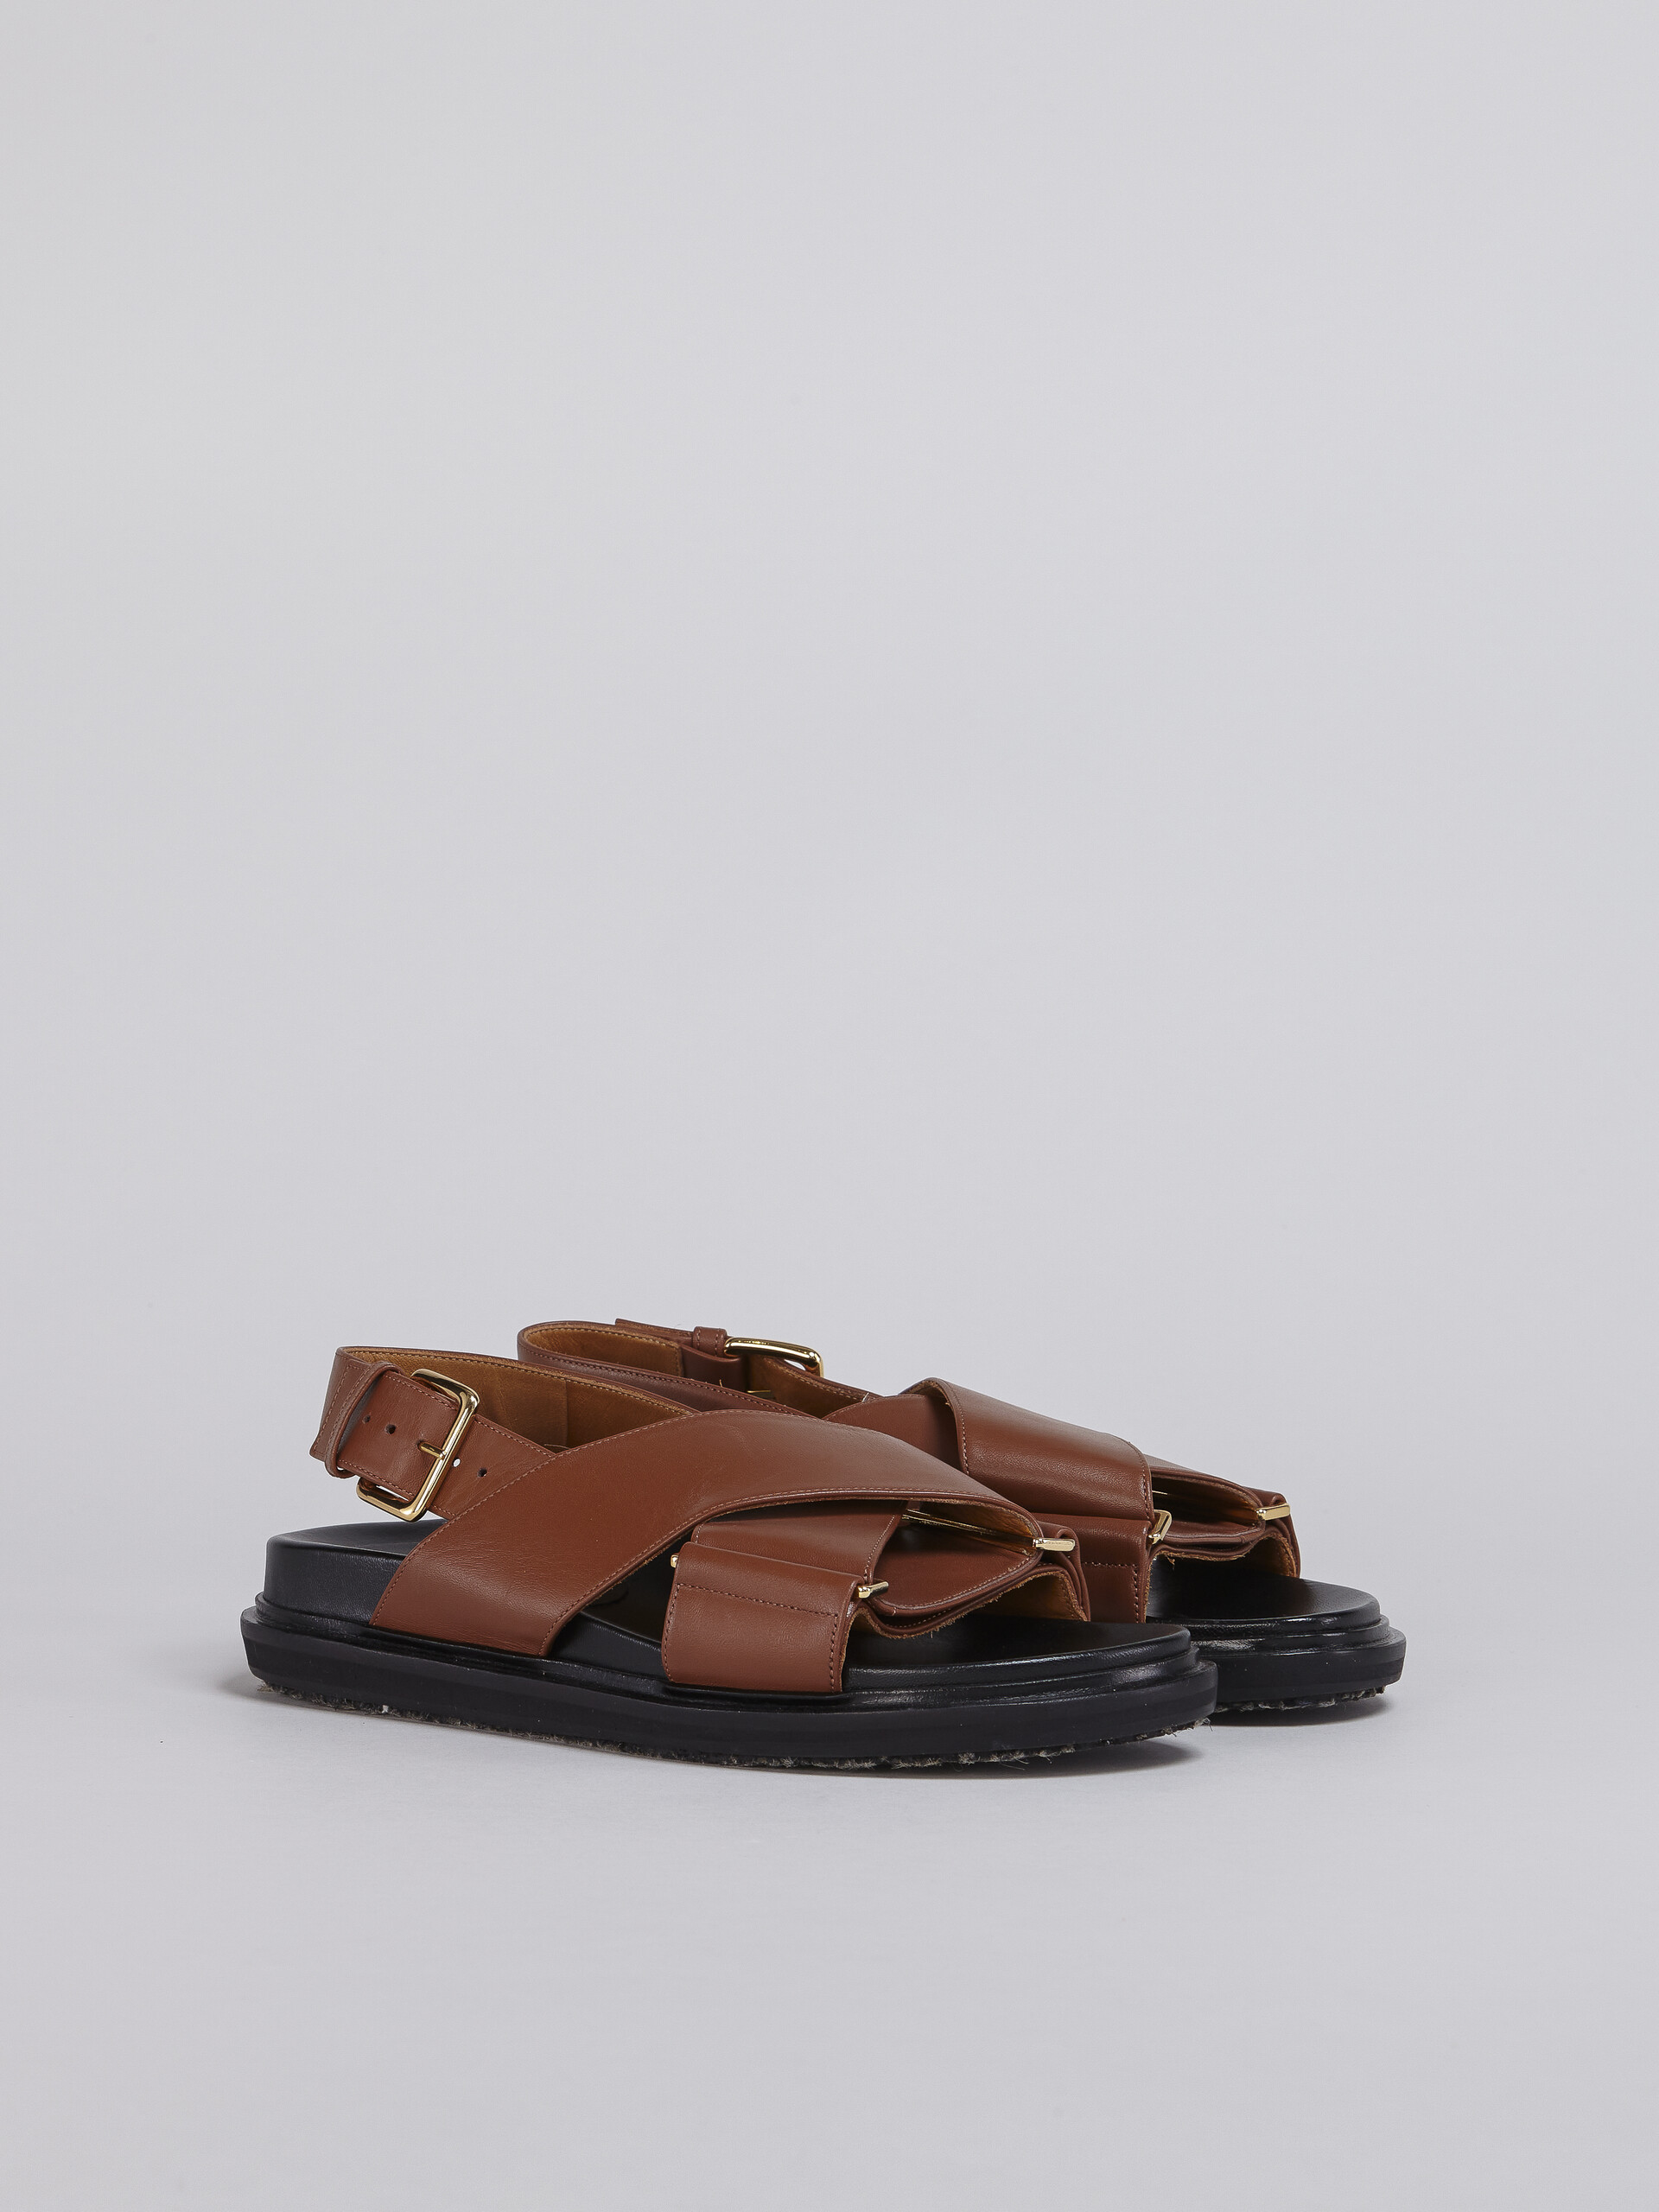 Braune Ledersandalen mit überkreuzten Riemchen - Sandalen - Image 2